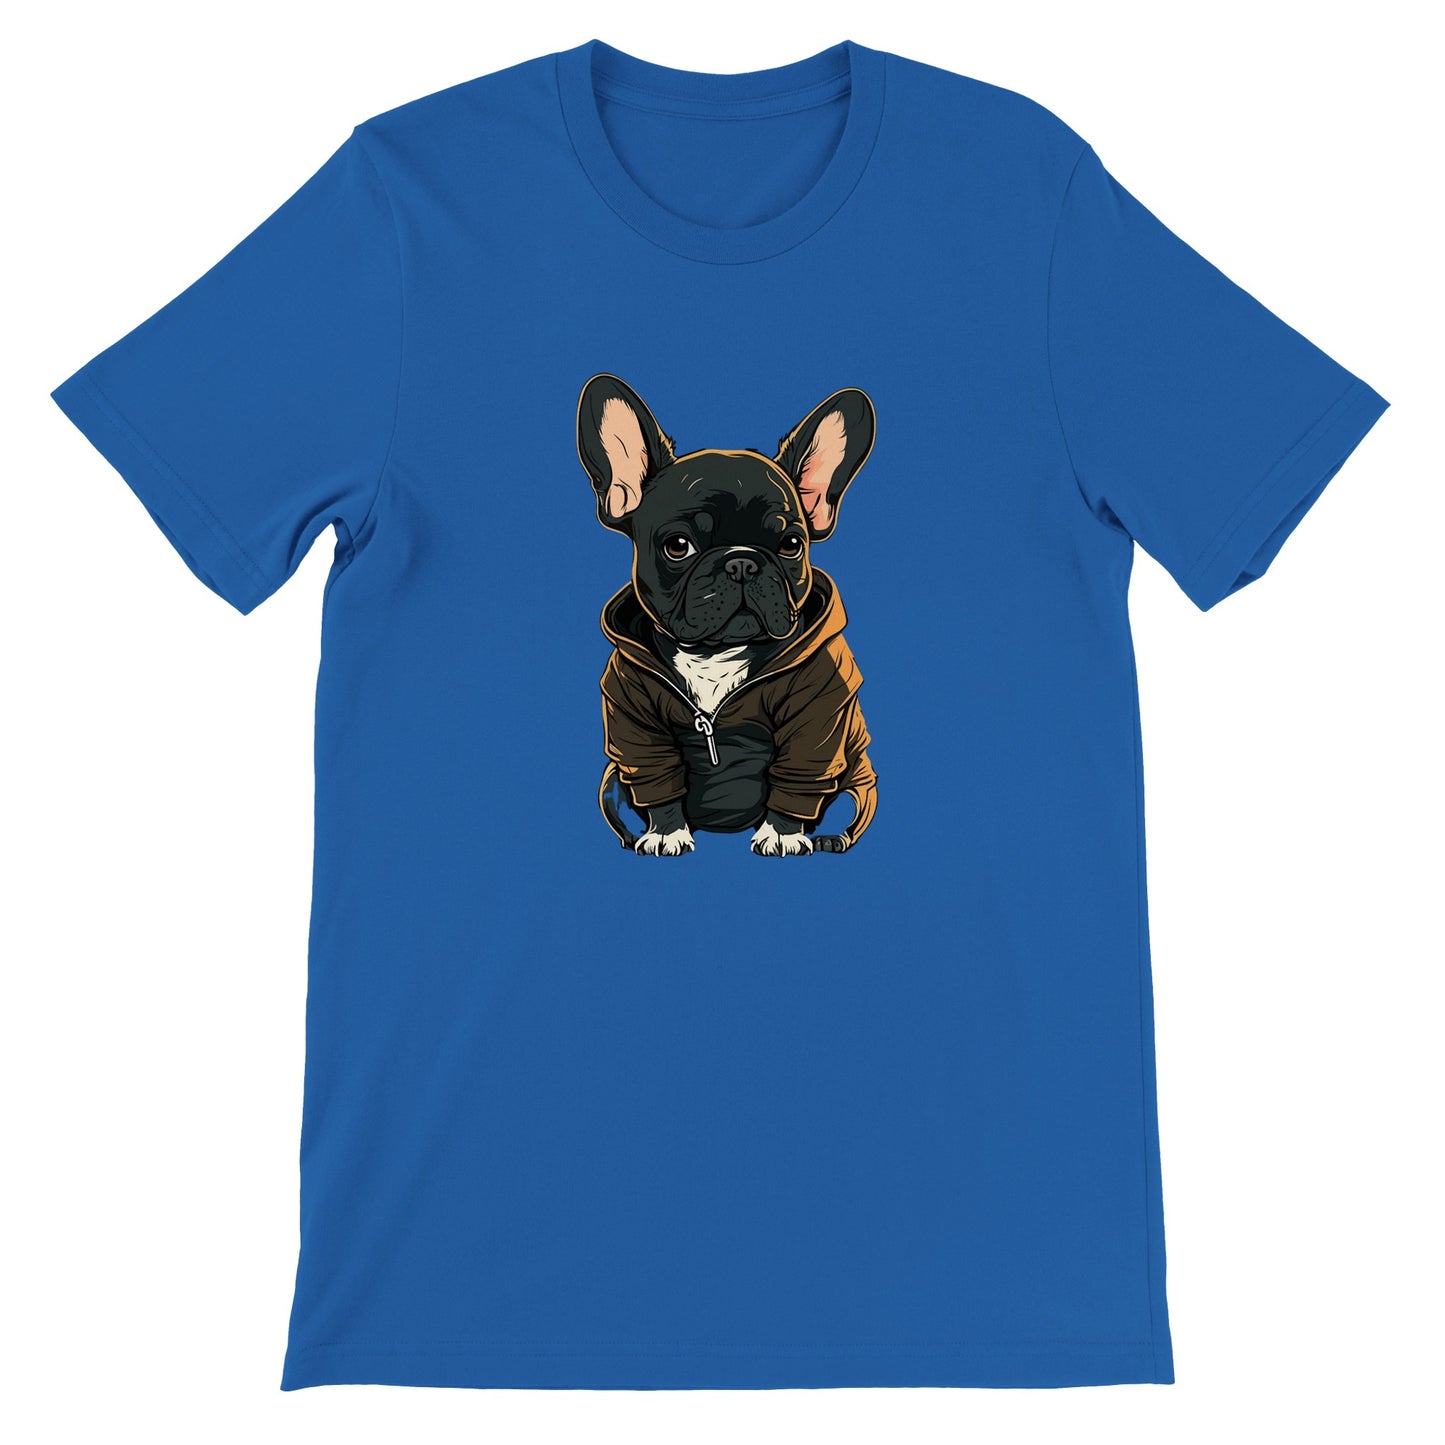 Dog T-Shirt - French Bulldog Dark Hoodie Artwork - Premium Unisex T-Shirt 